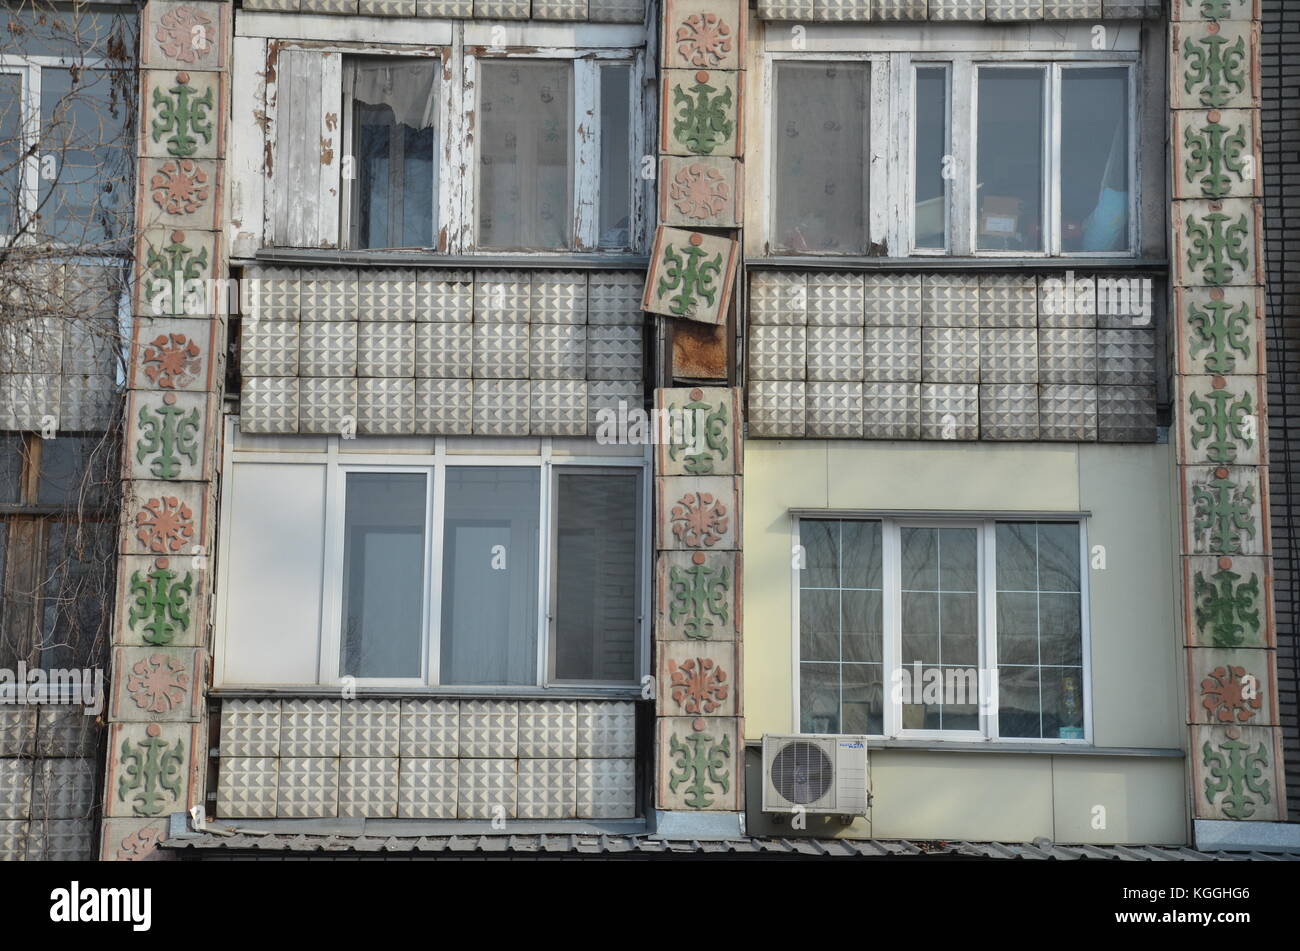 Las baldosas antiguas decoradas se desprenden de la fachada de un antiguo edificio soviético de apartamentos en Kakakhstan. declinar. creación rápida. caída aparte, todavía en uso, fachada Foto de stock